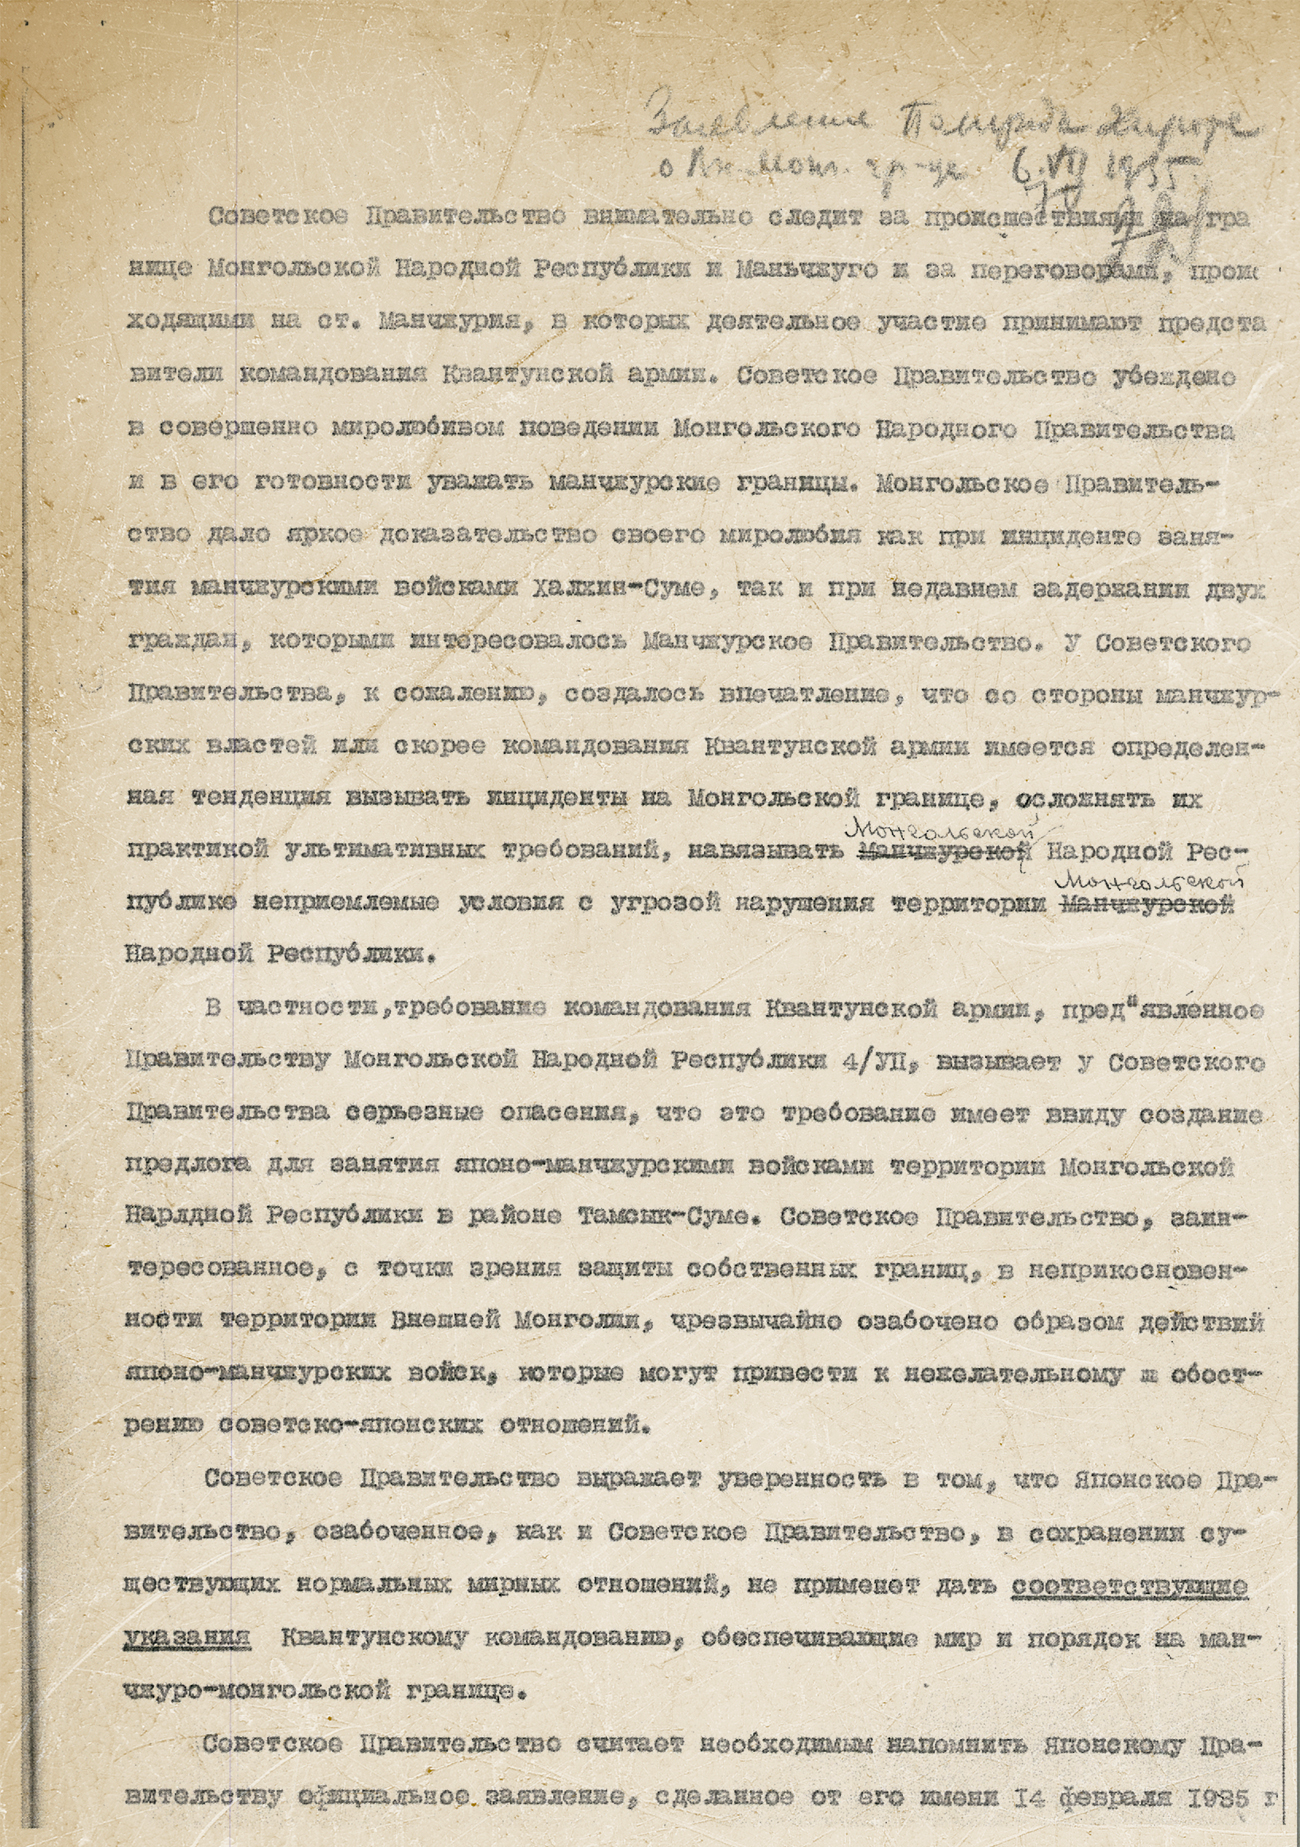 Заявление Советского правительства по инциденту в МНР и Маньчжоу-Го 6 июля 1935 года